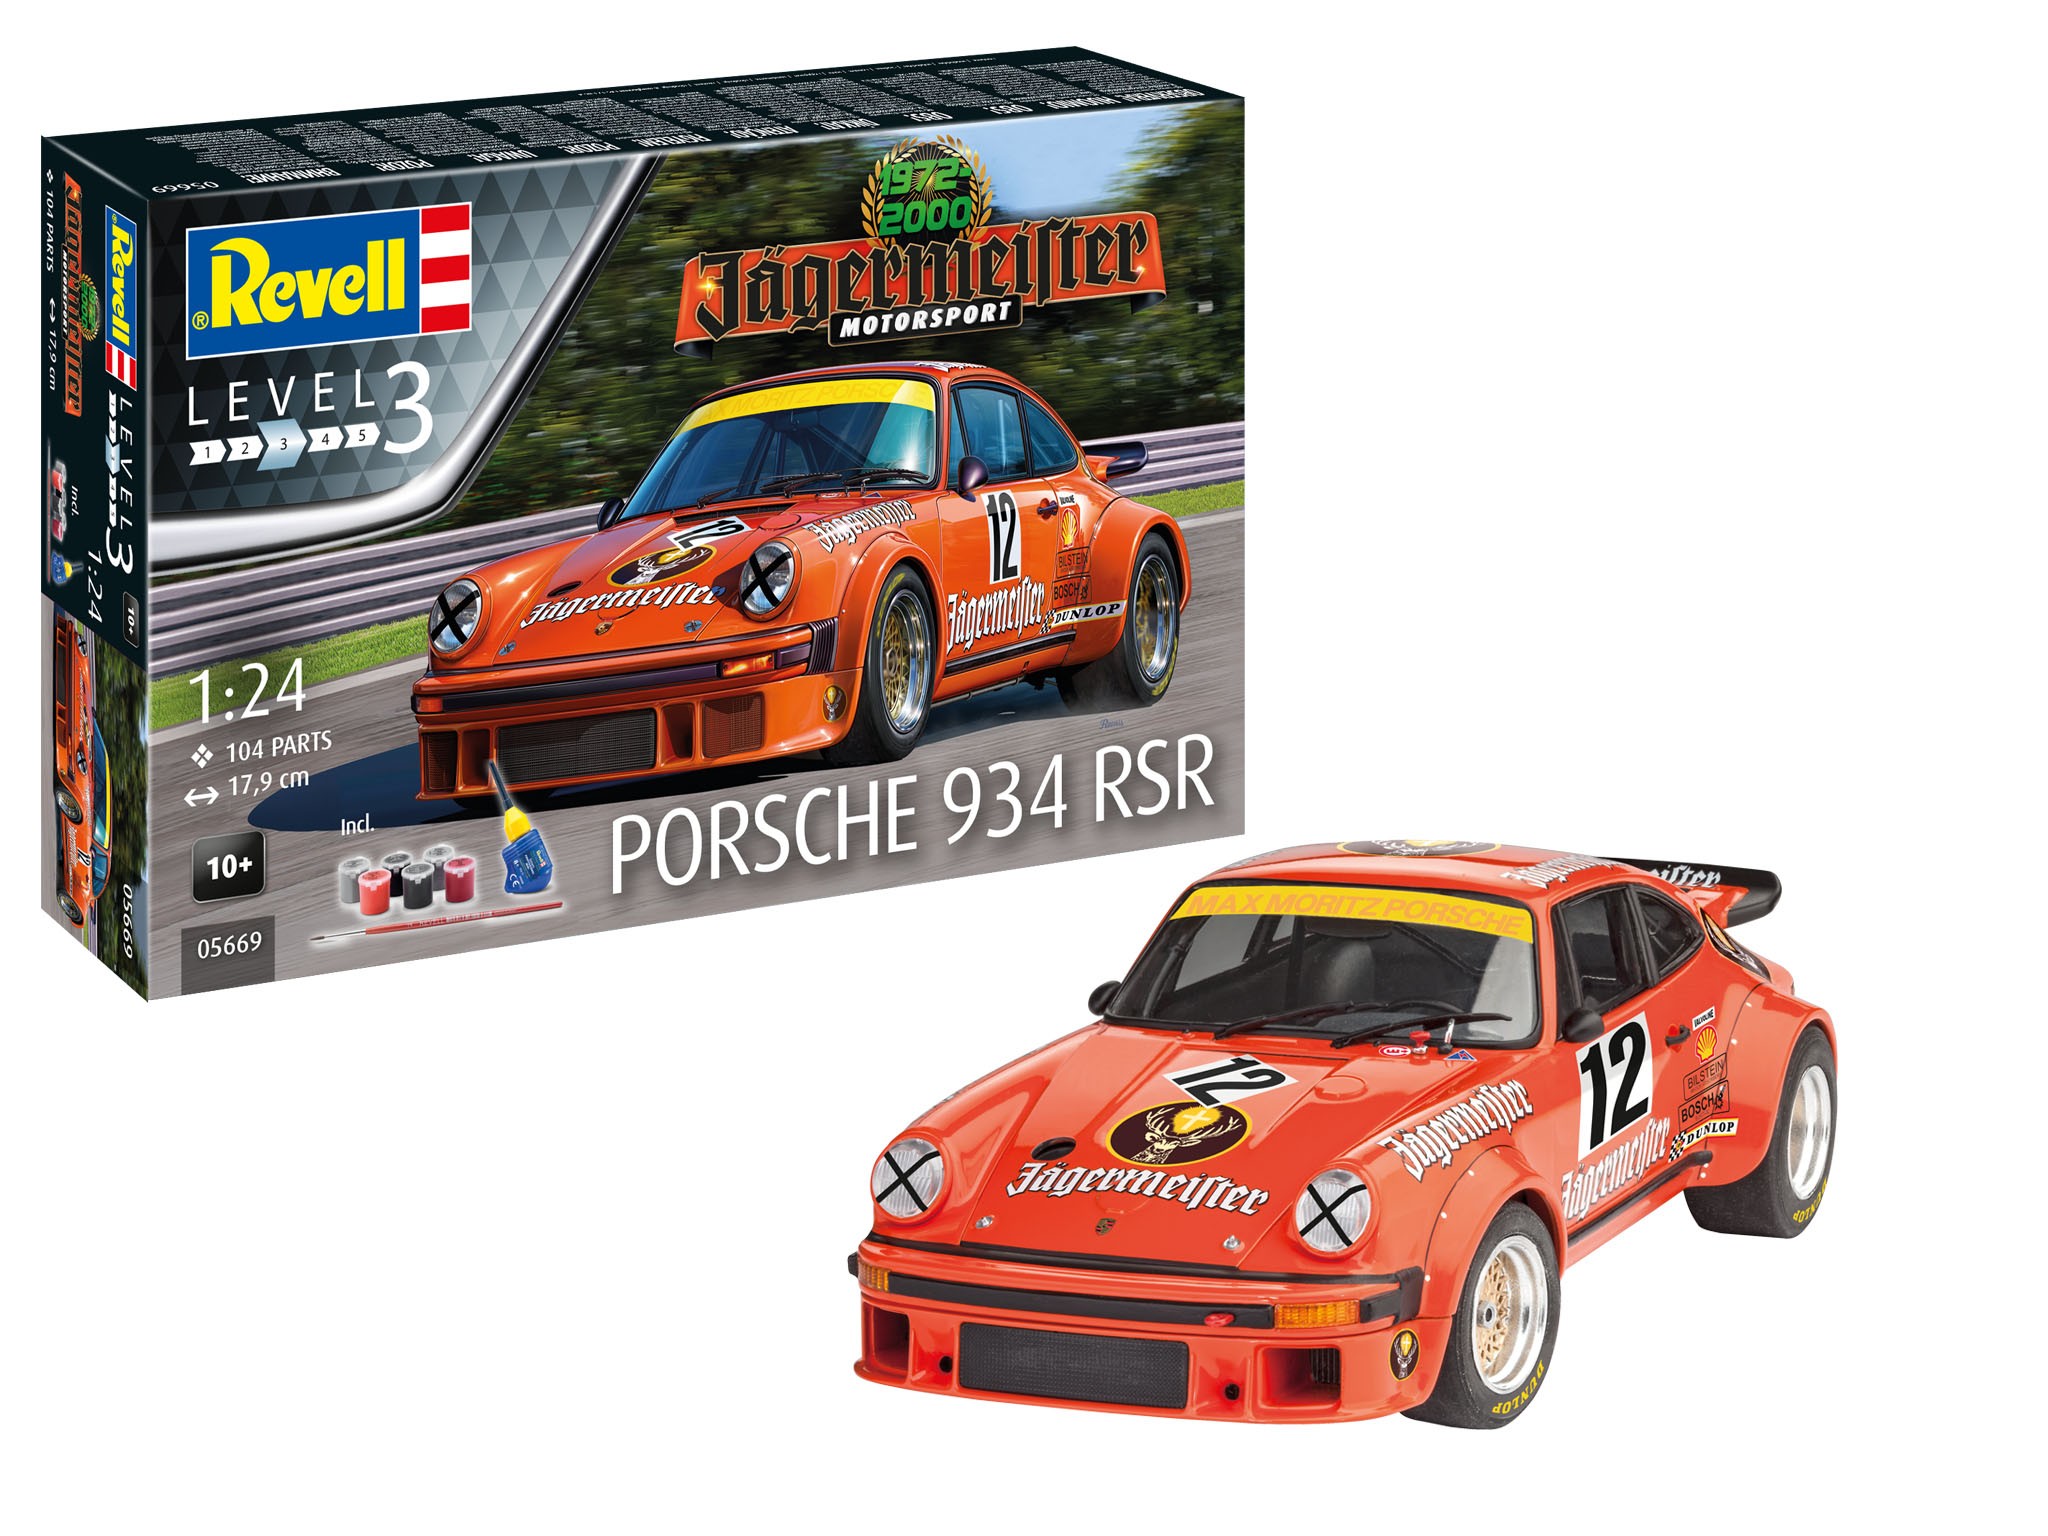 Revell 05669 Porsche 934 RSR   1/24  " Gift Set "